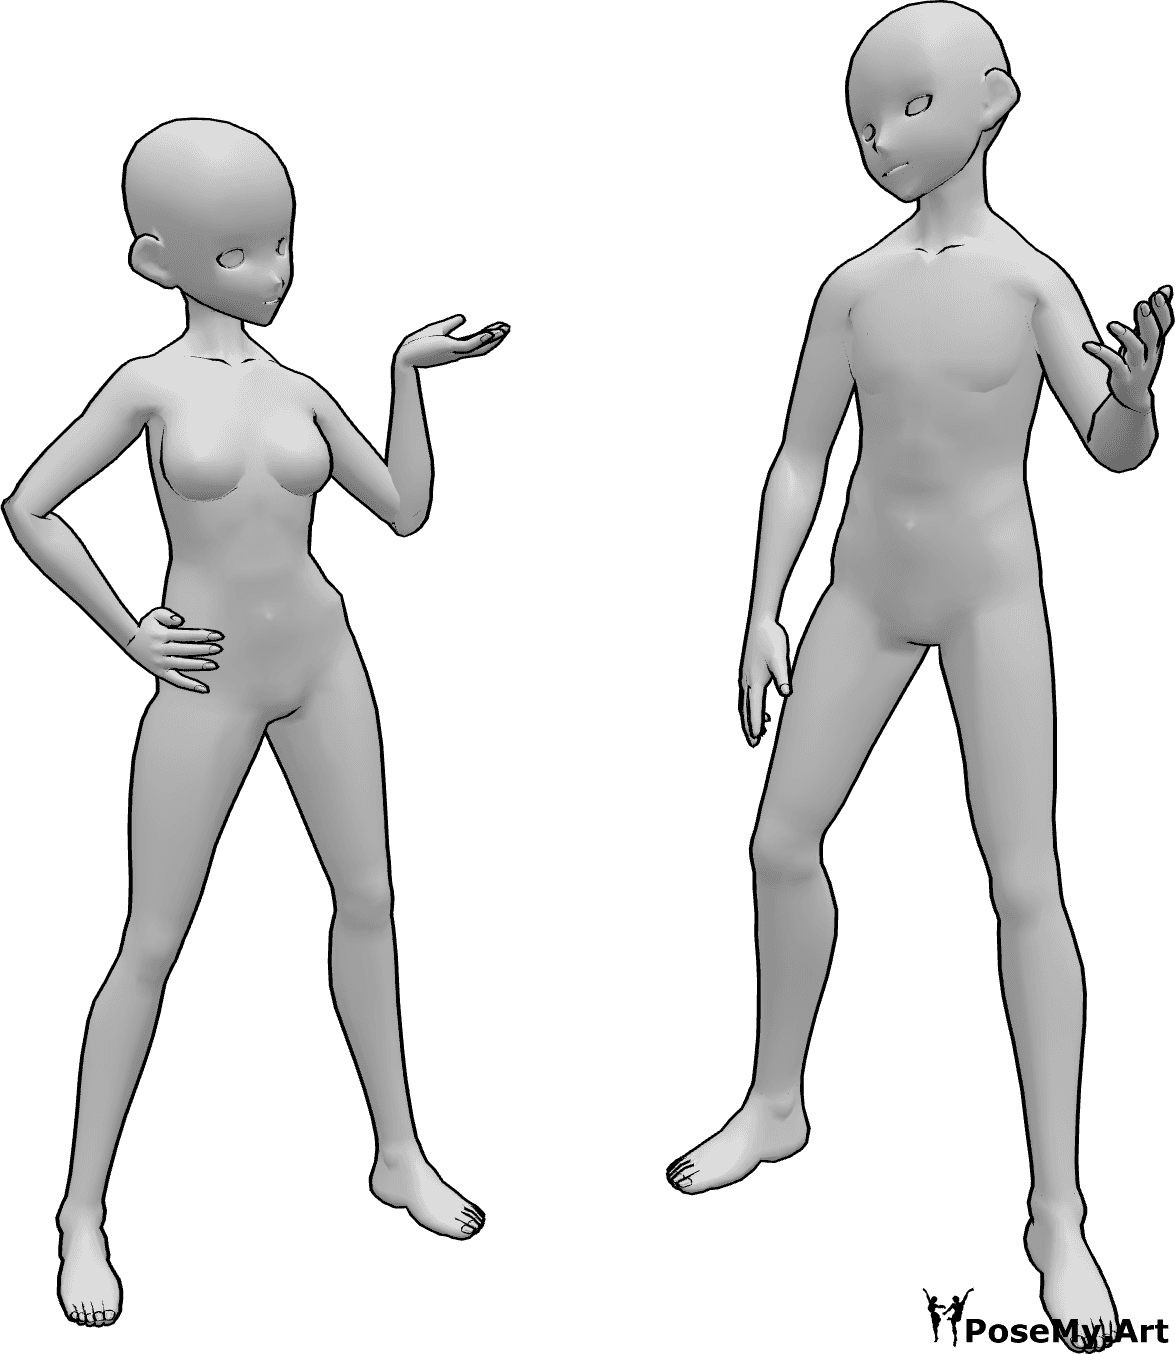 Riferimento alle pose- Posa di conversazione donna-uomo - La donna e l'uomo dell'anime discutono di qualcosa